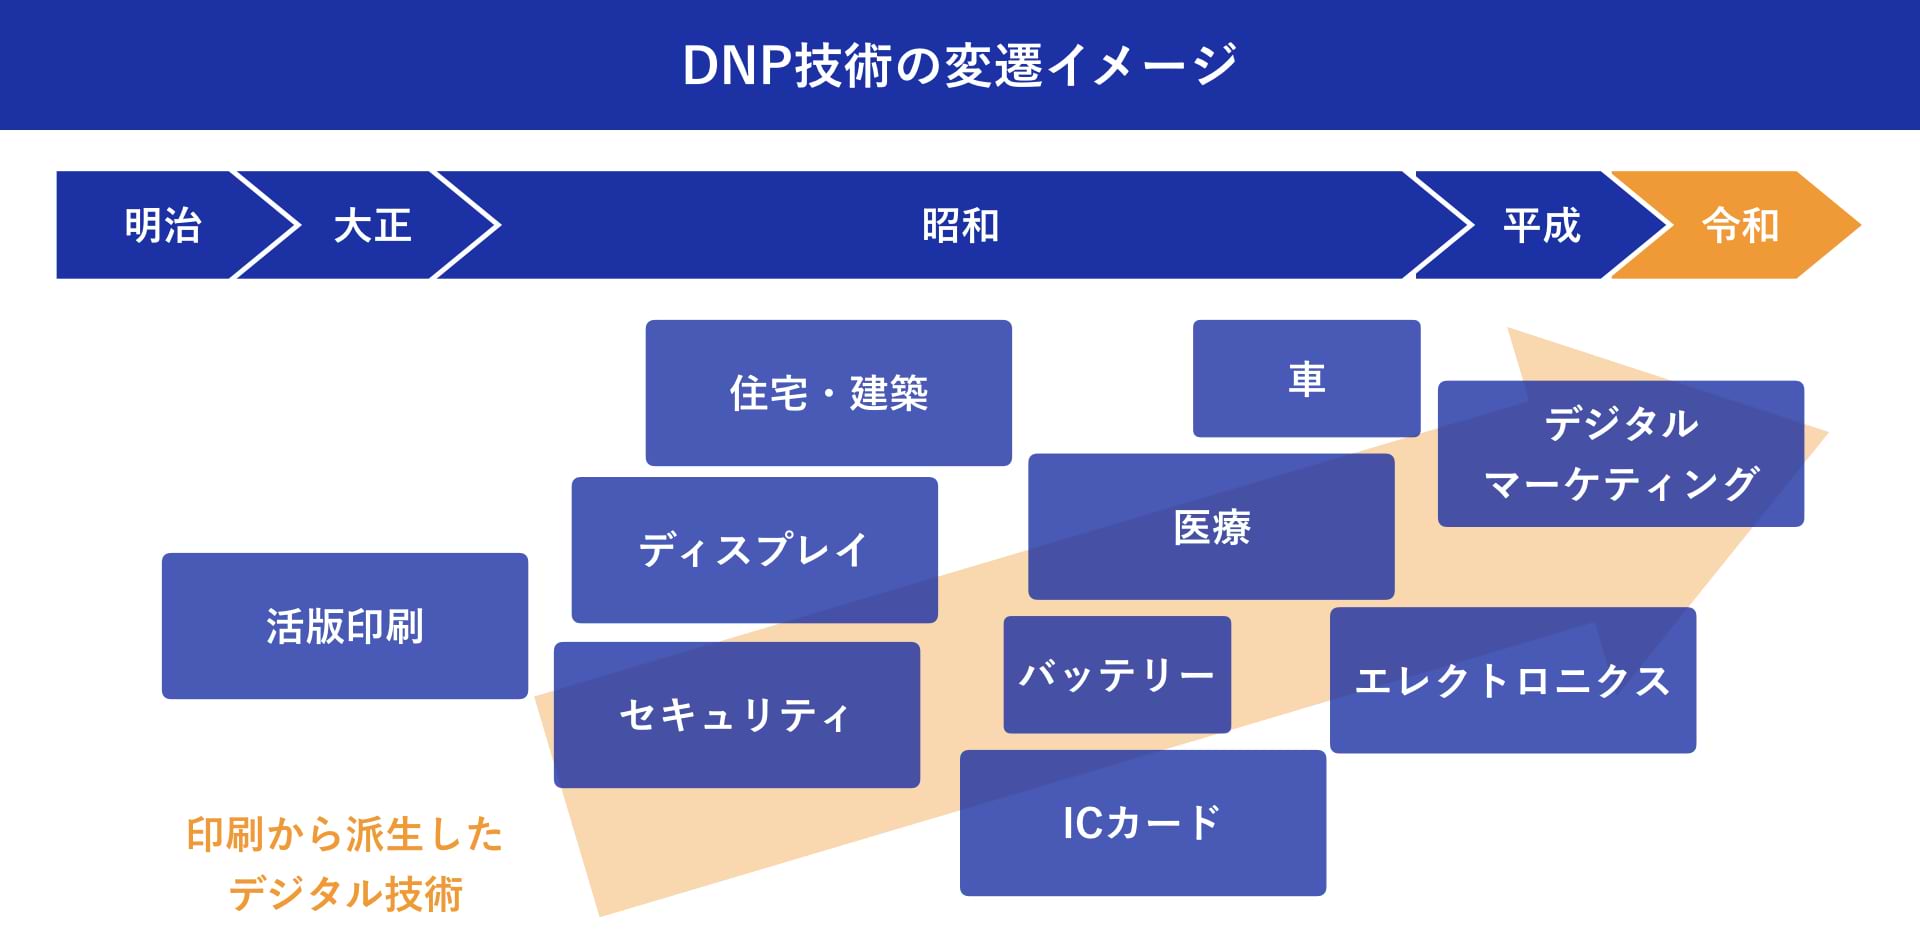 大日本印刷株式会社：加藤 綱貴 DNP技術の変遷イメージ